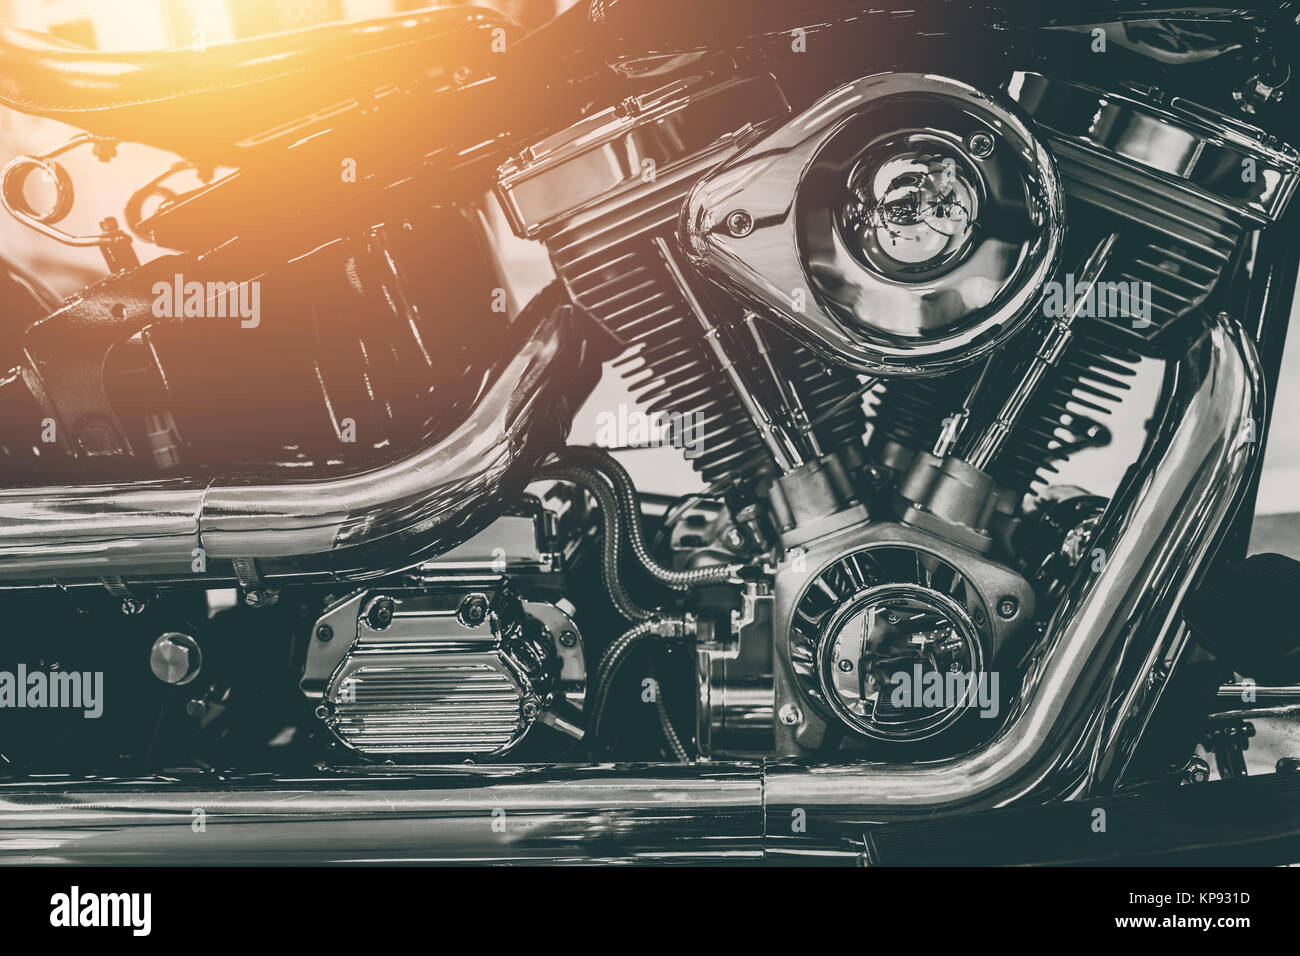 vintage motorcycle engine shiny chrome art photography Stock Photo